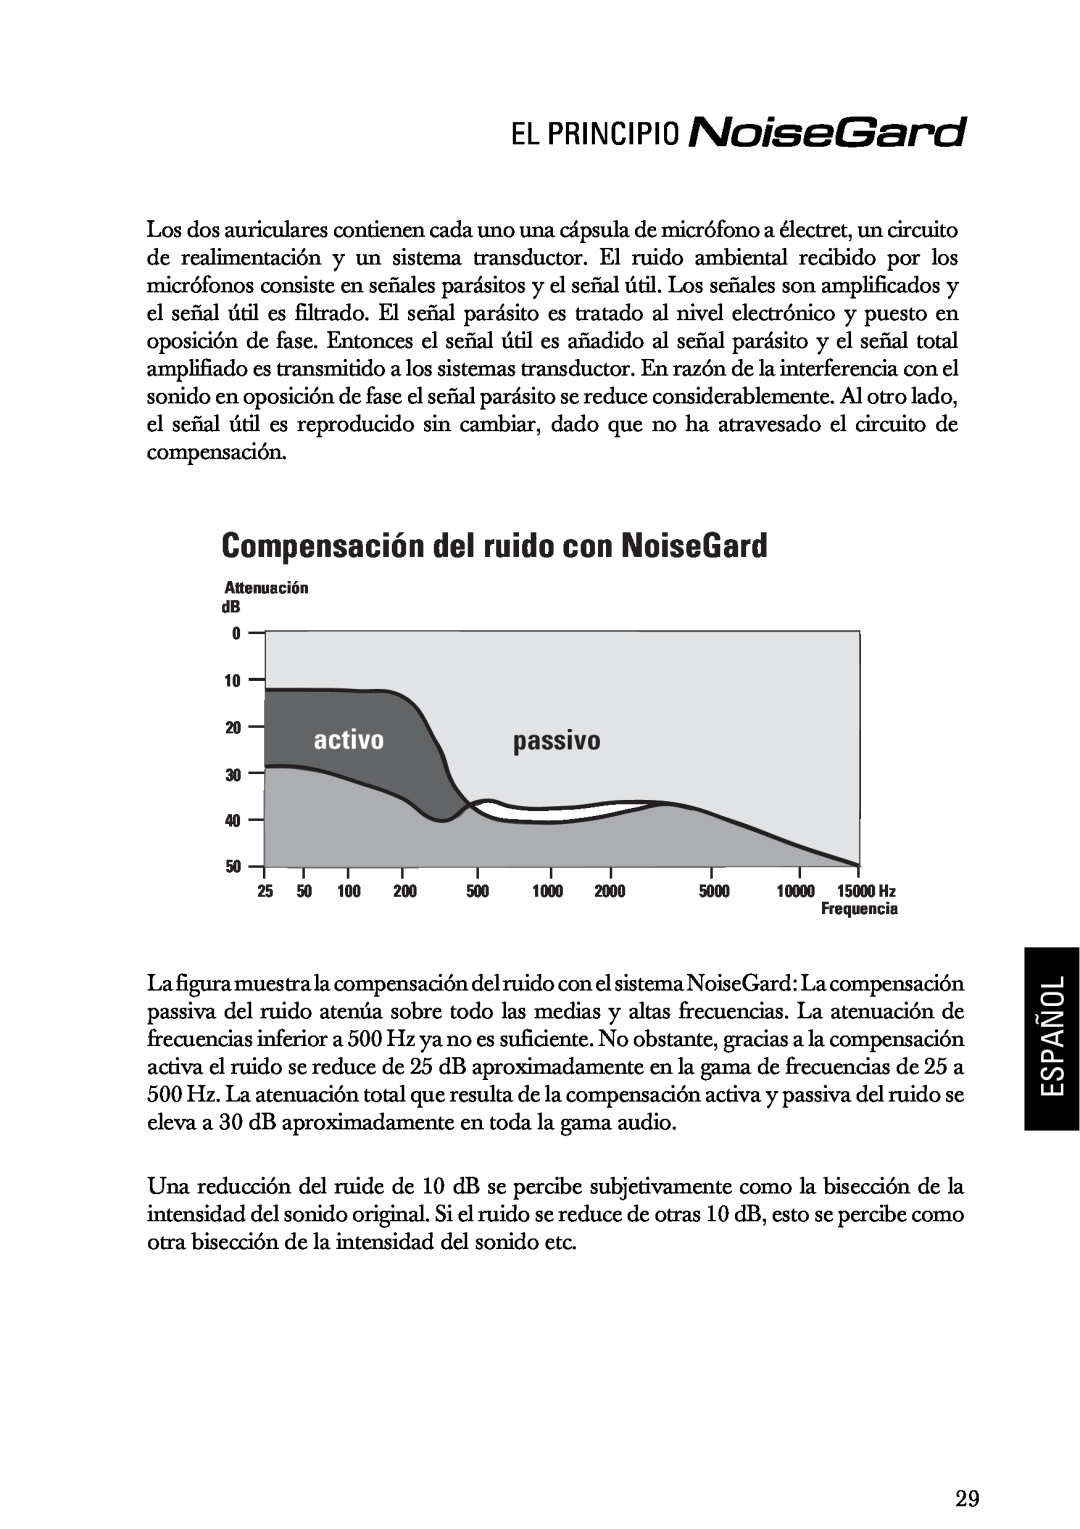 Sennheiser HMEC 200iii manual Compensación del ruido con NoiseGard, passivo, El Principio, Español, activo 